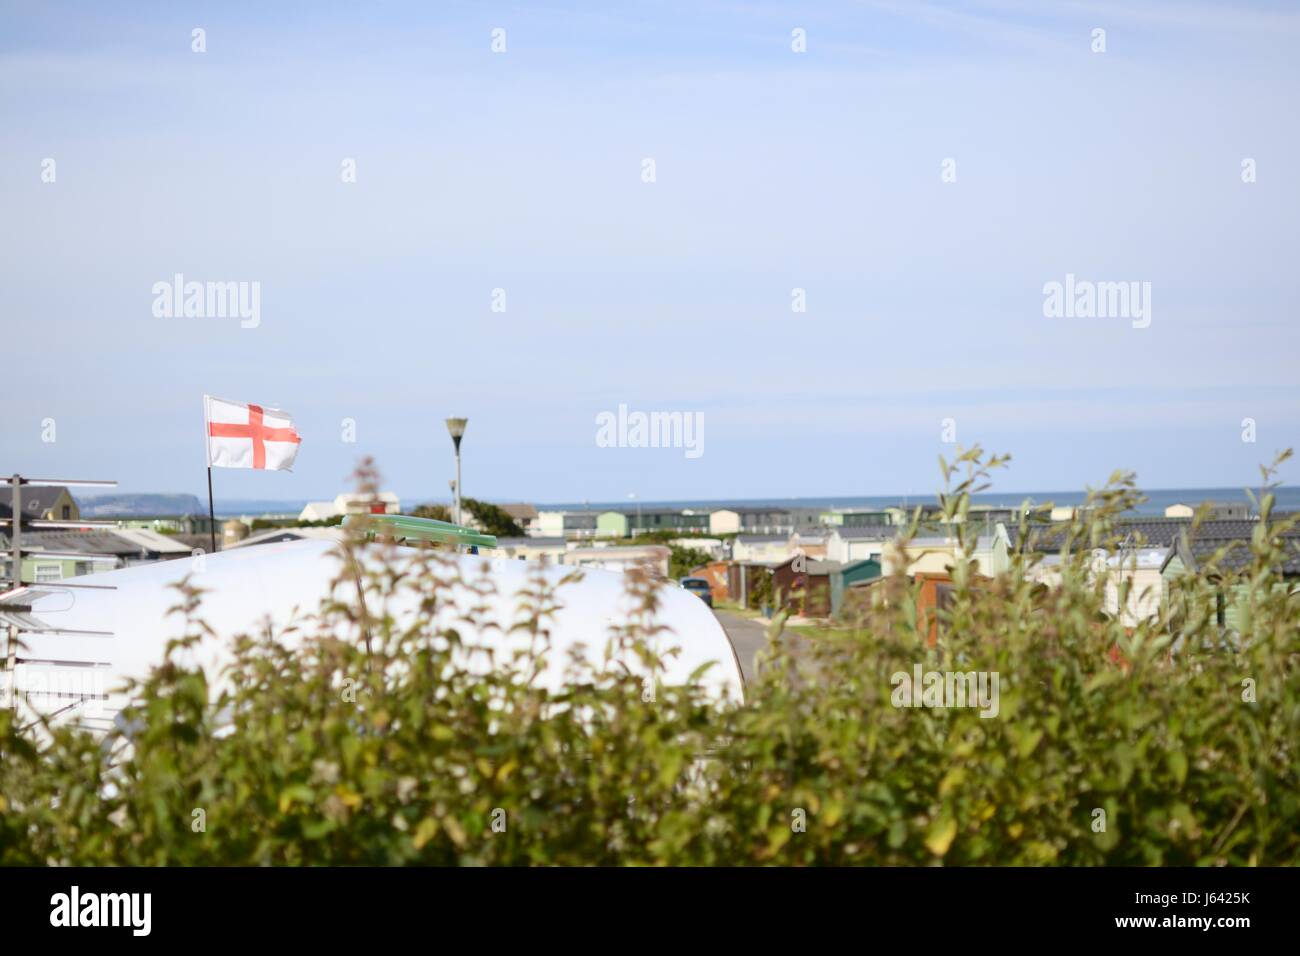 Bandiera inglese sorvolando un caravan in un caravan park in Galles, Regno Unito Foto Stock